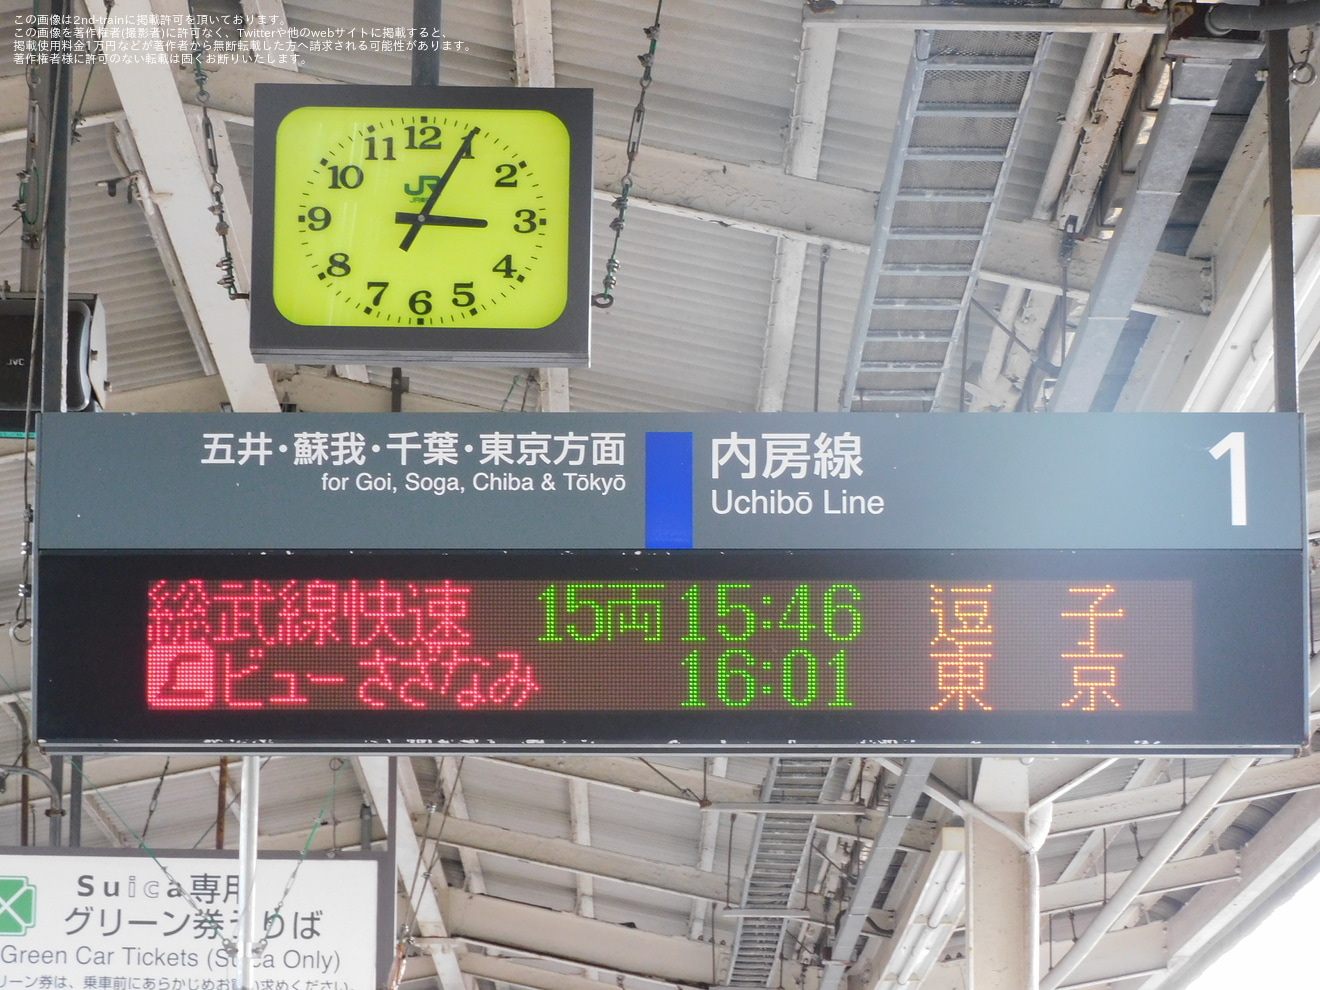 【JR東】特急 「ビューさざなみ」を臨時運行の拡大写真